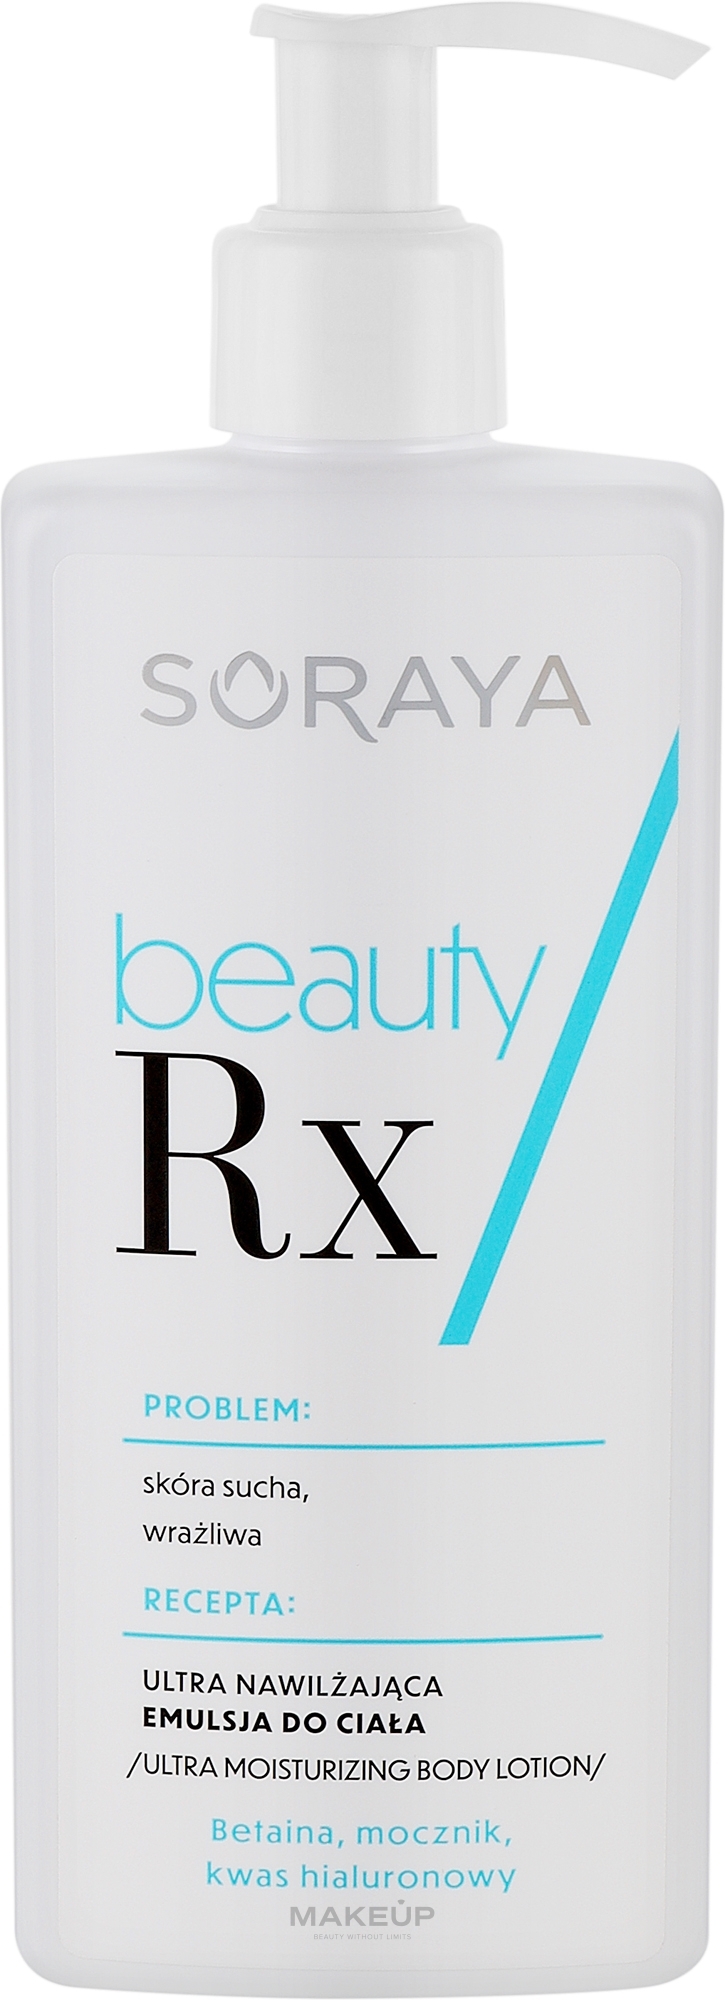 Ultranawilżająca emulsja do ciała - Soraya Beauty Rx — Zdjęcie 250 ml